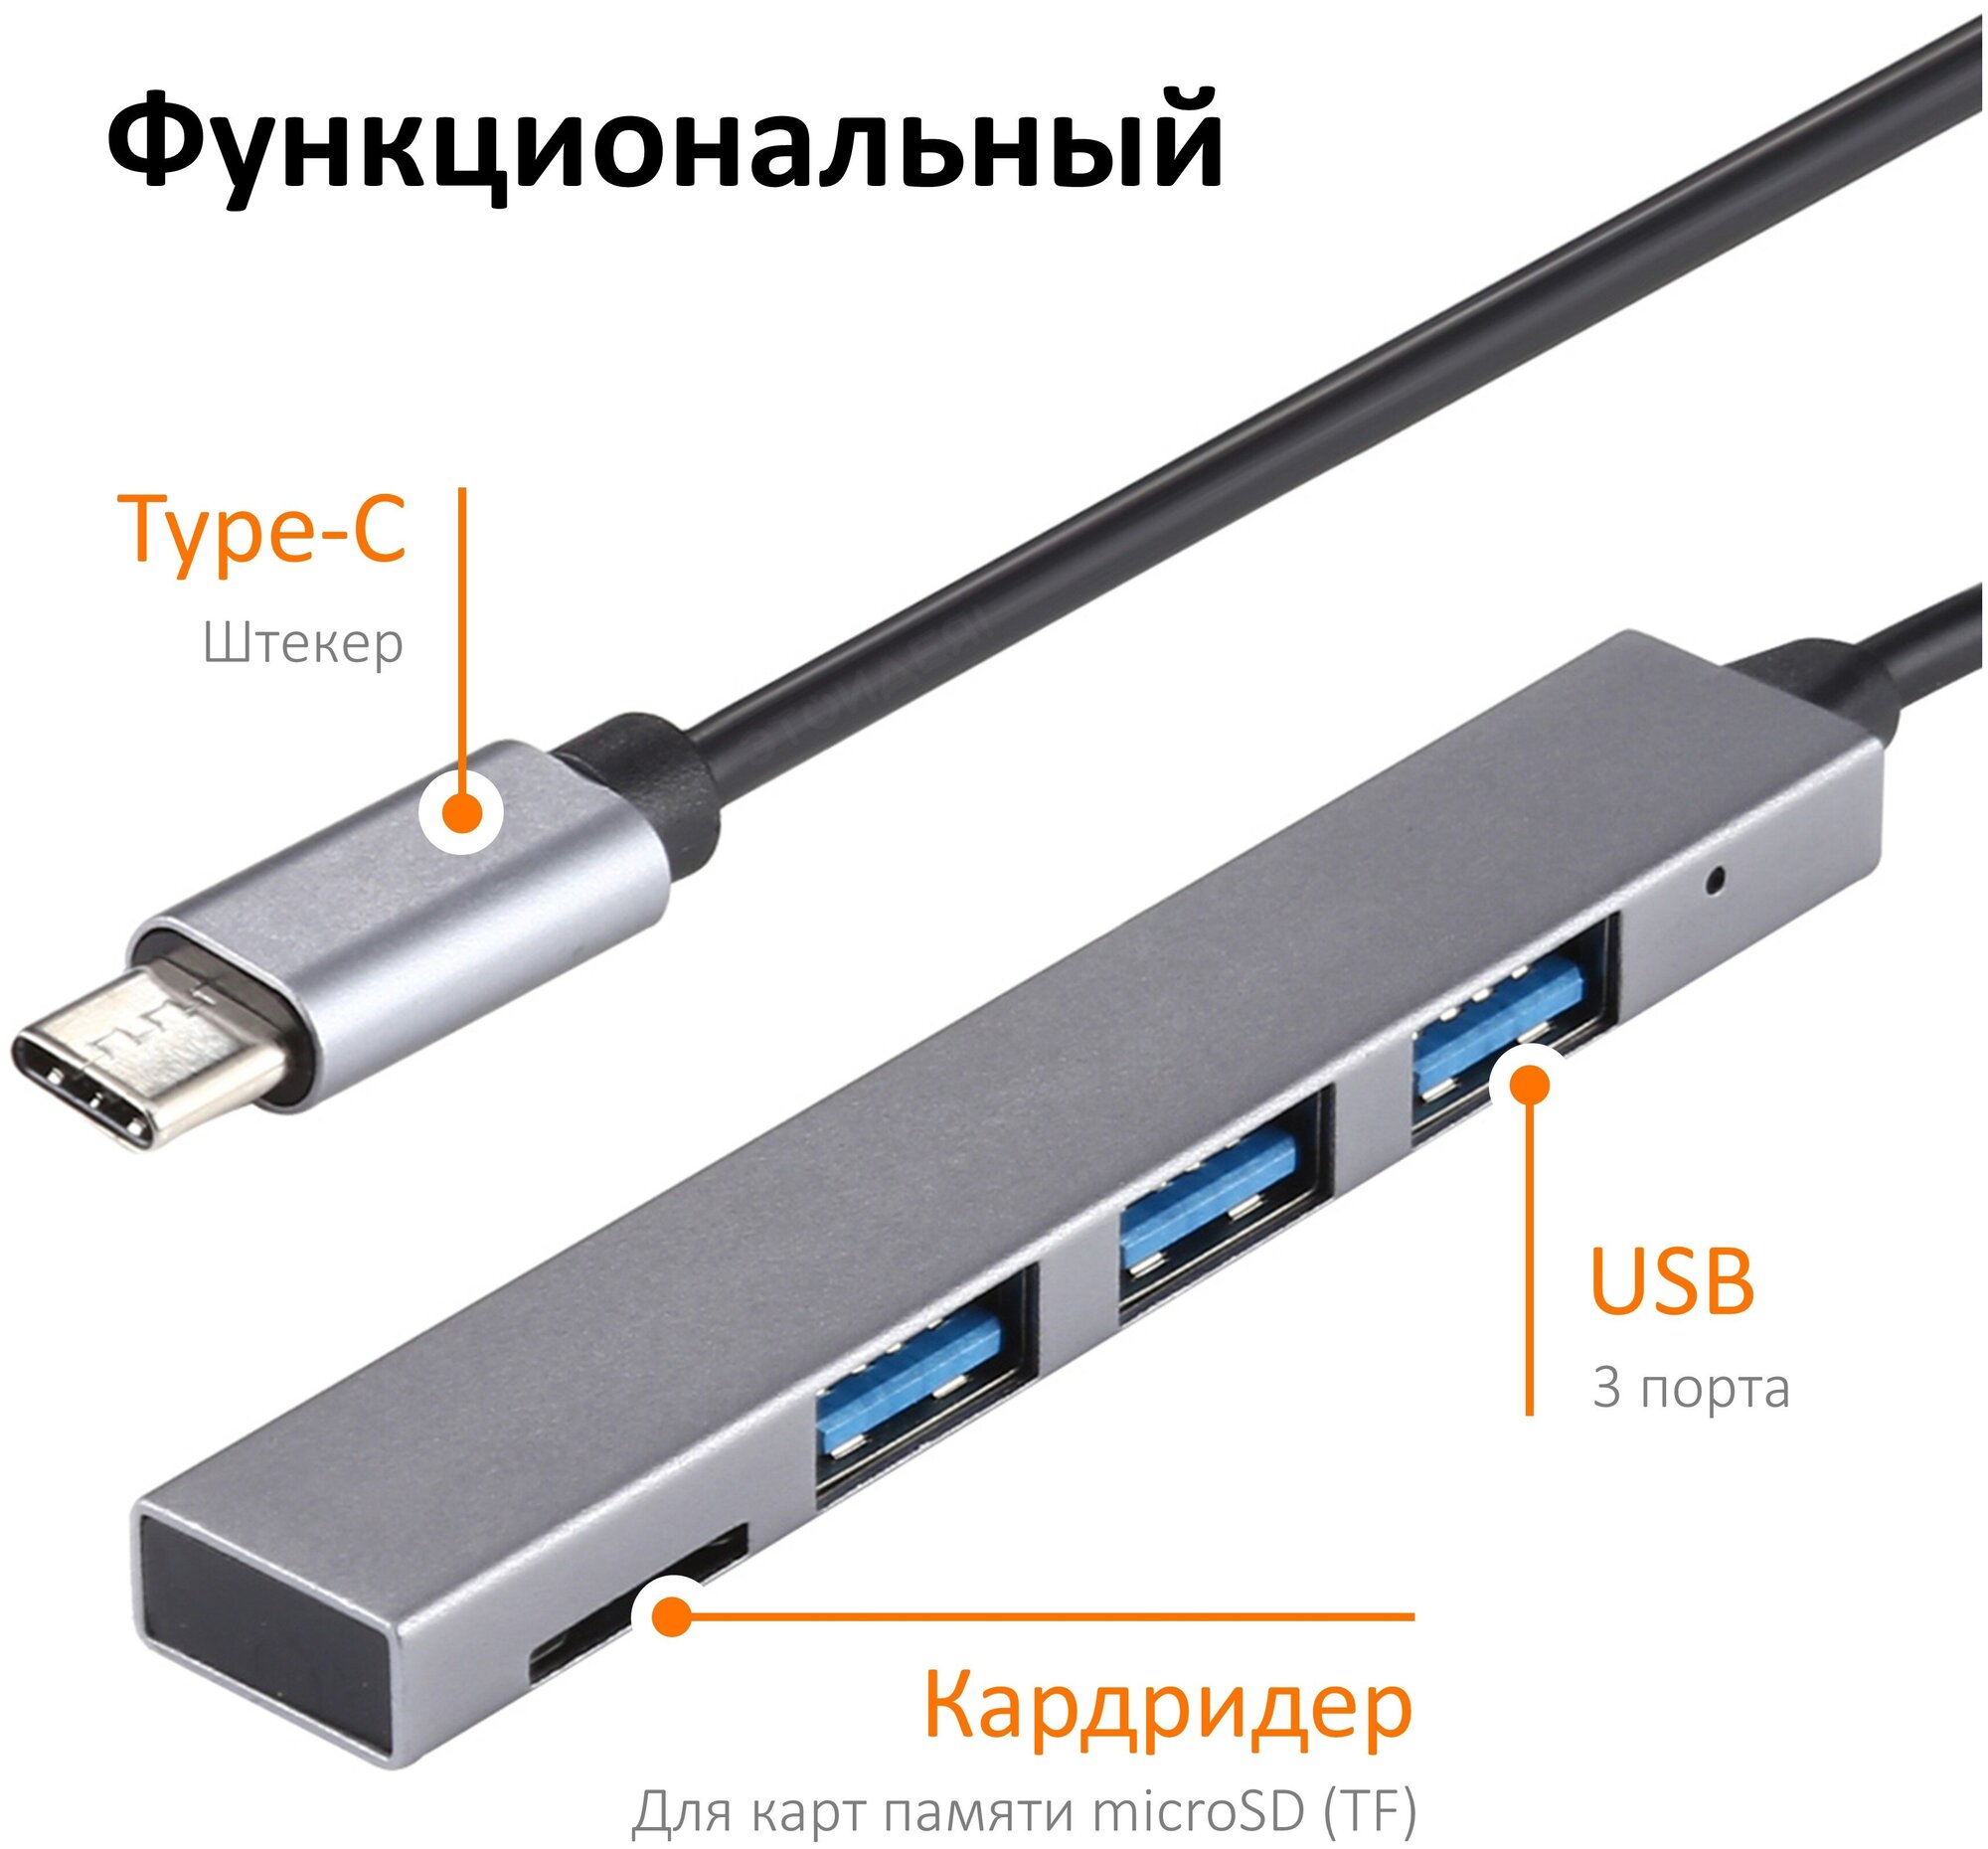 Хаб с кабелем Type-C на 3 порта USB 2.0 с кардридером для карт памяти microSD, алюминиевый, темно-серый / для MacBook, ноутбука, компьютера / NOBUS